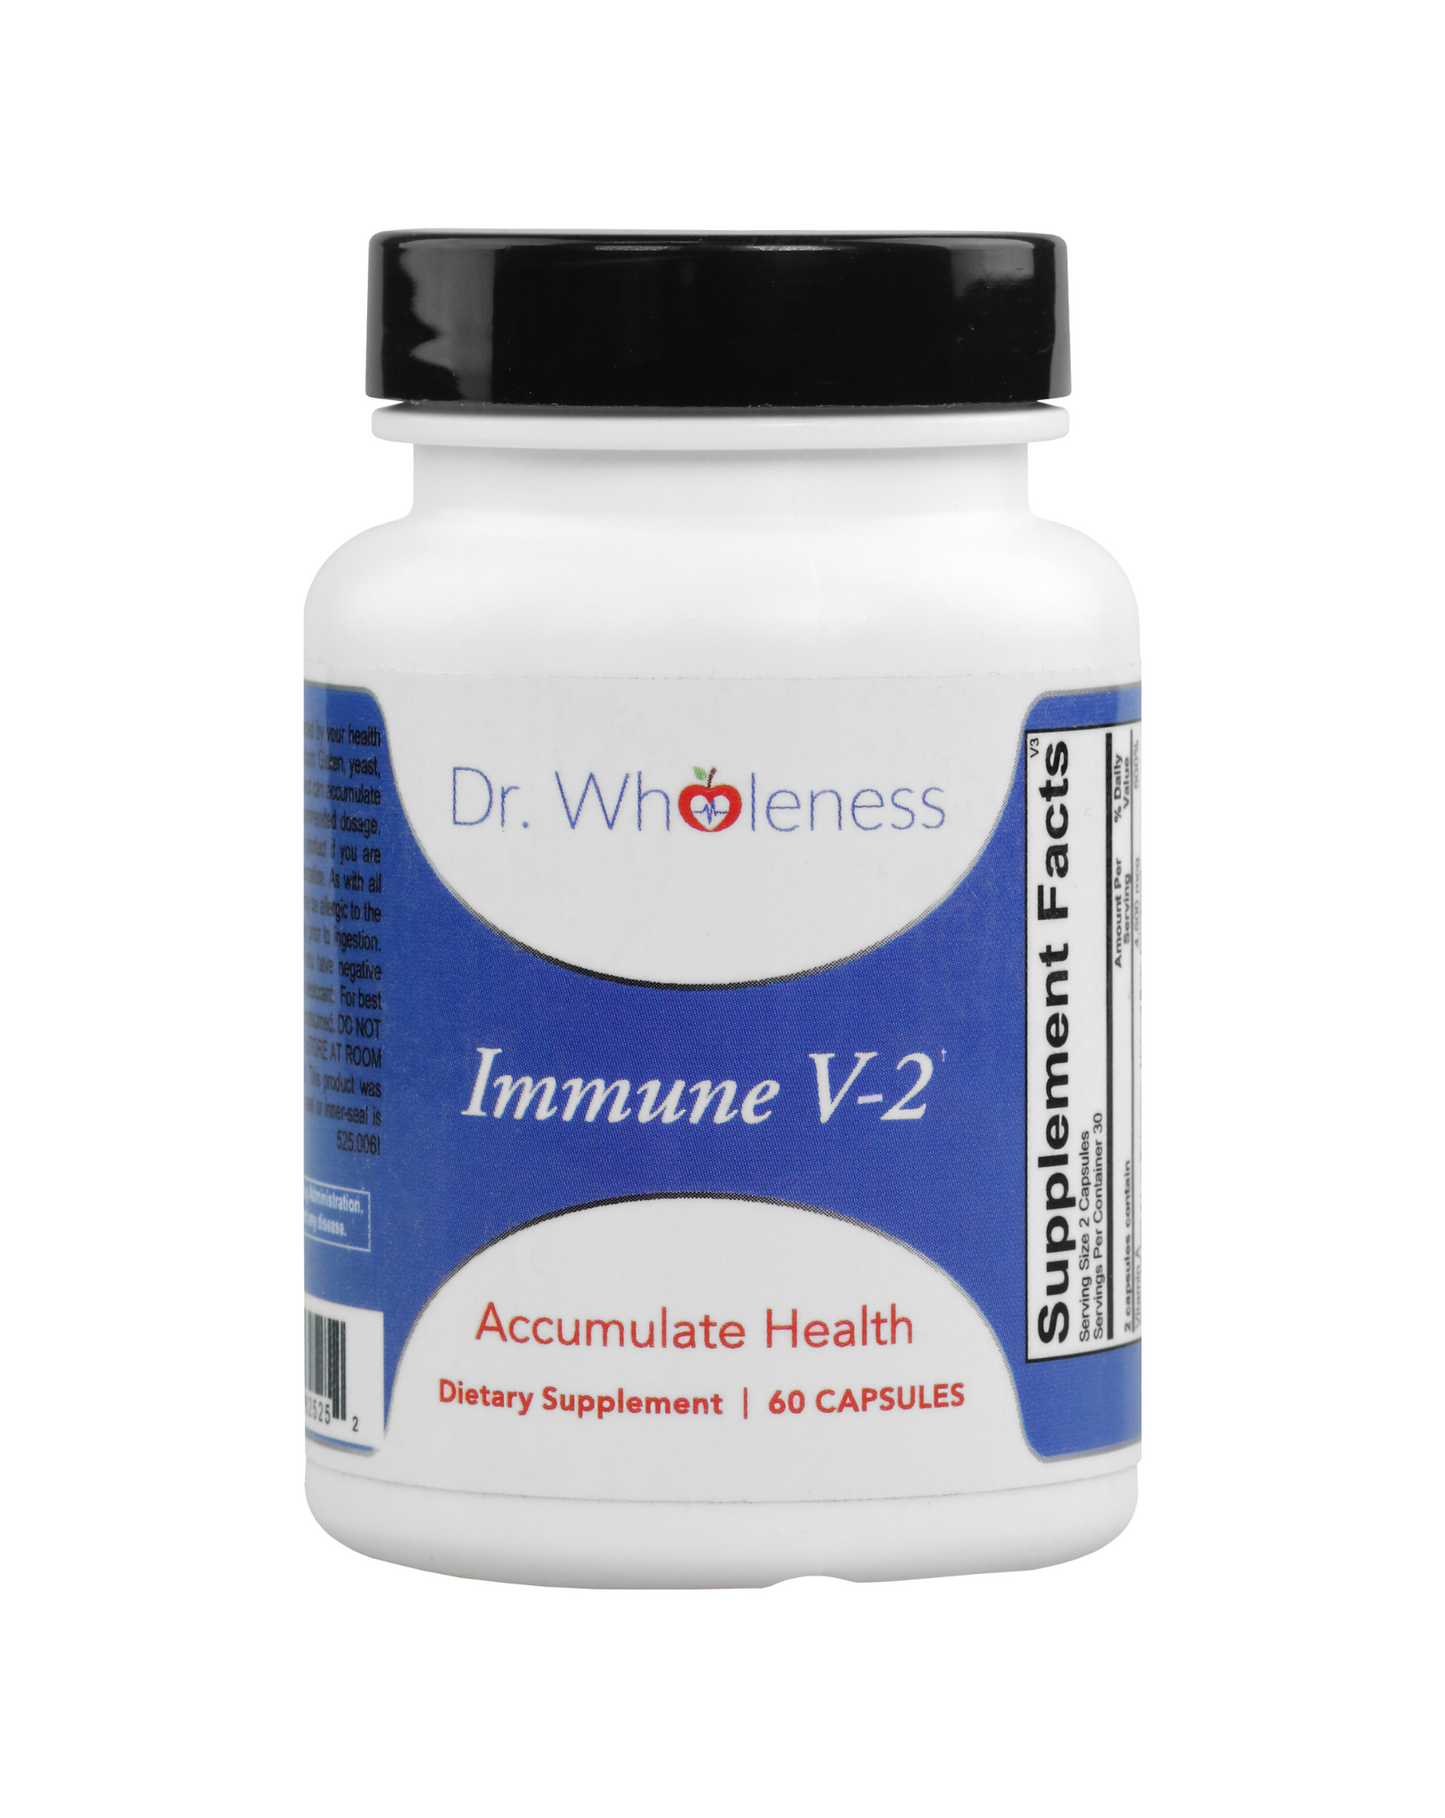 Immune V-2